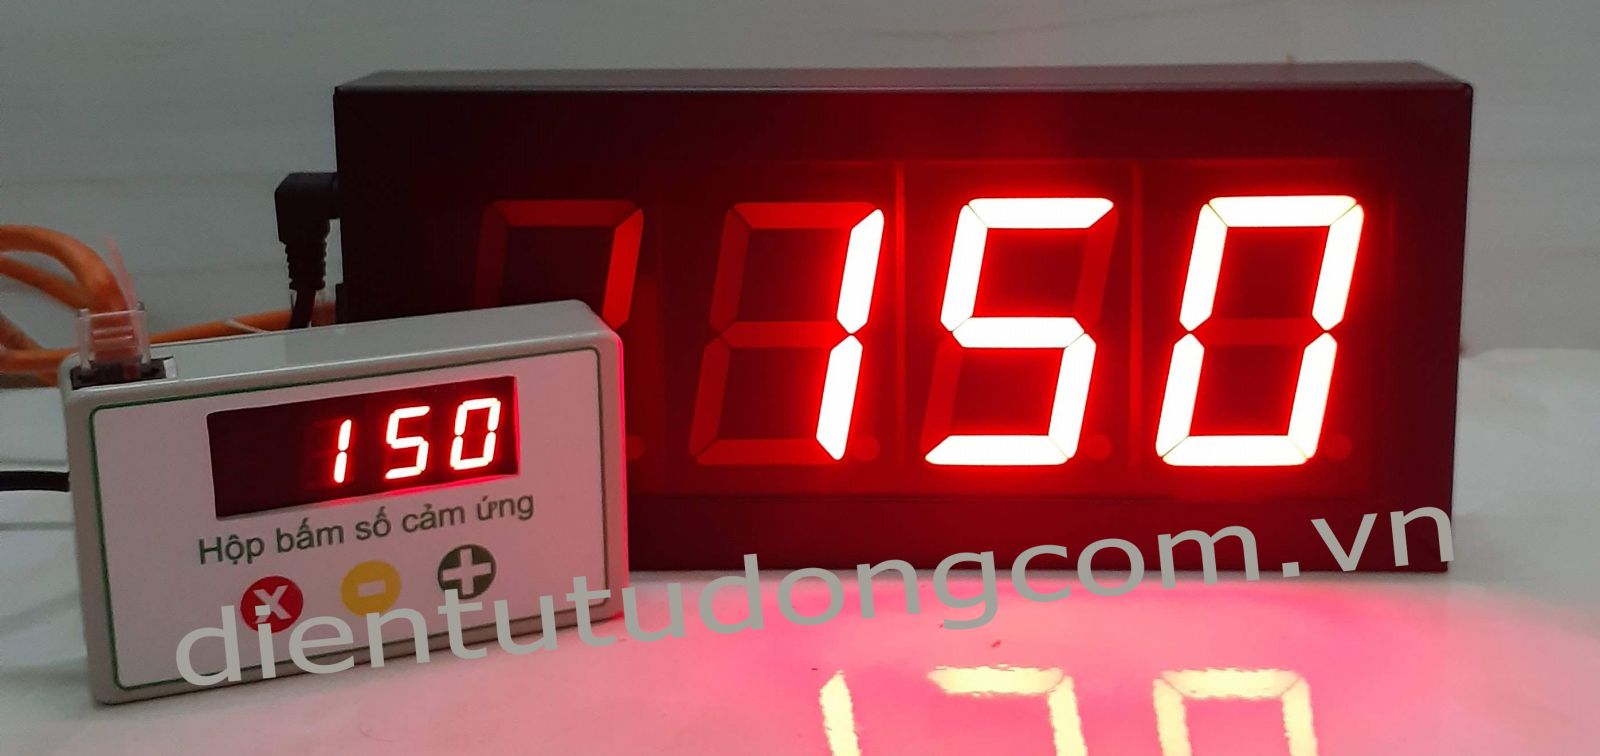 Bội gọi số thứ tự- máy gọi số thứ tự (hộp bấm cảm ứng ) tại Hồ Chí Minh